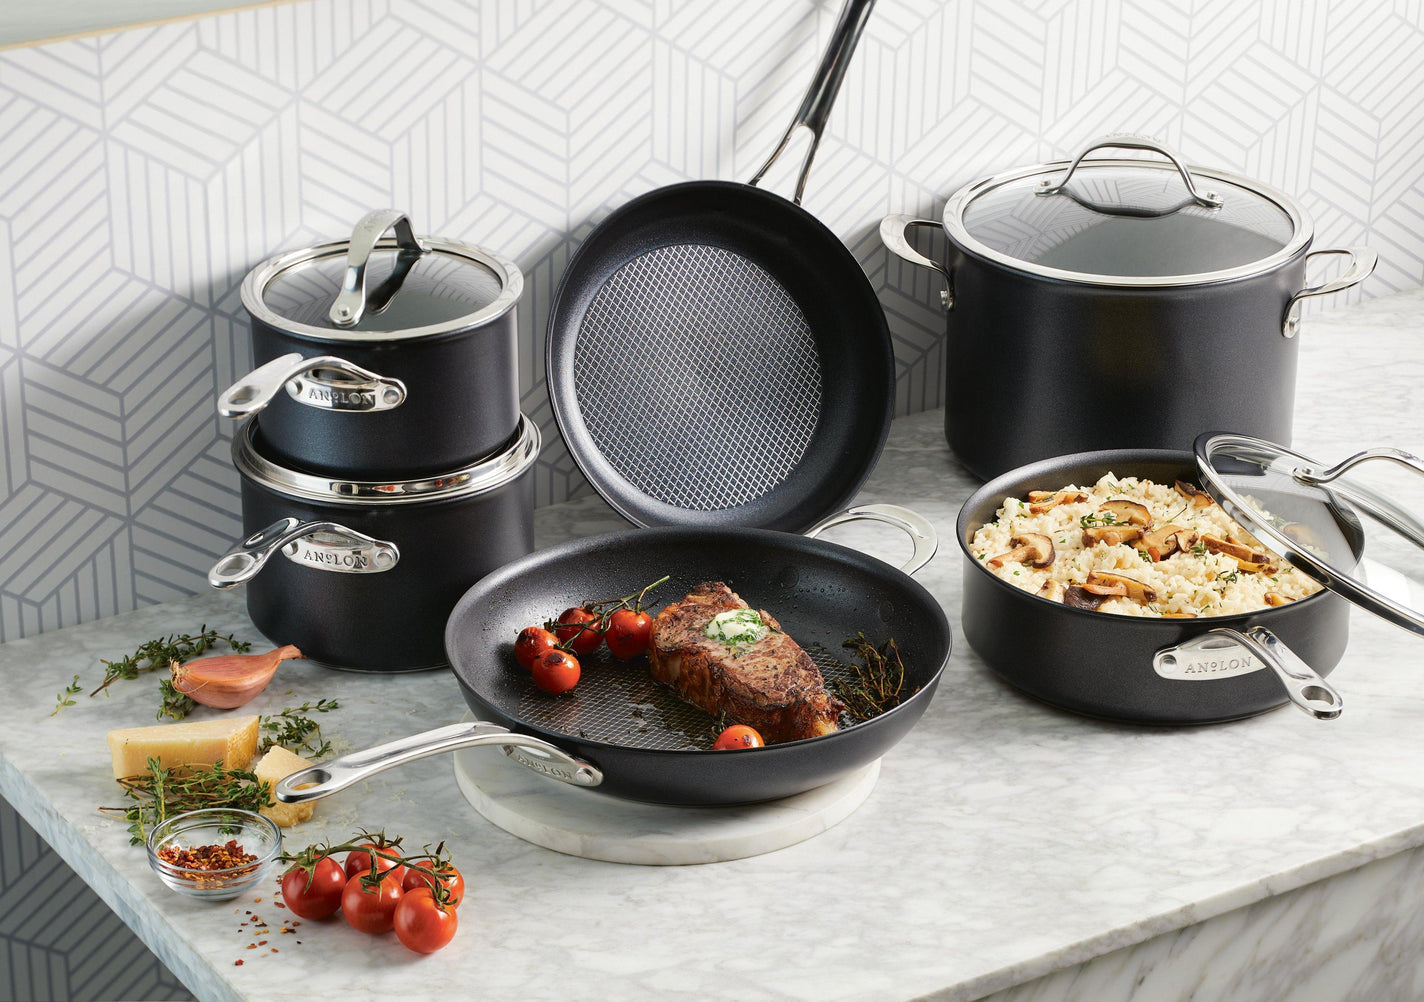 Anolon X SearTech Aluminum Nonstick Cookware Pots and Pans Set, 10